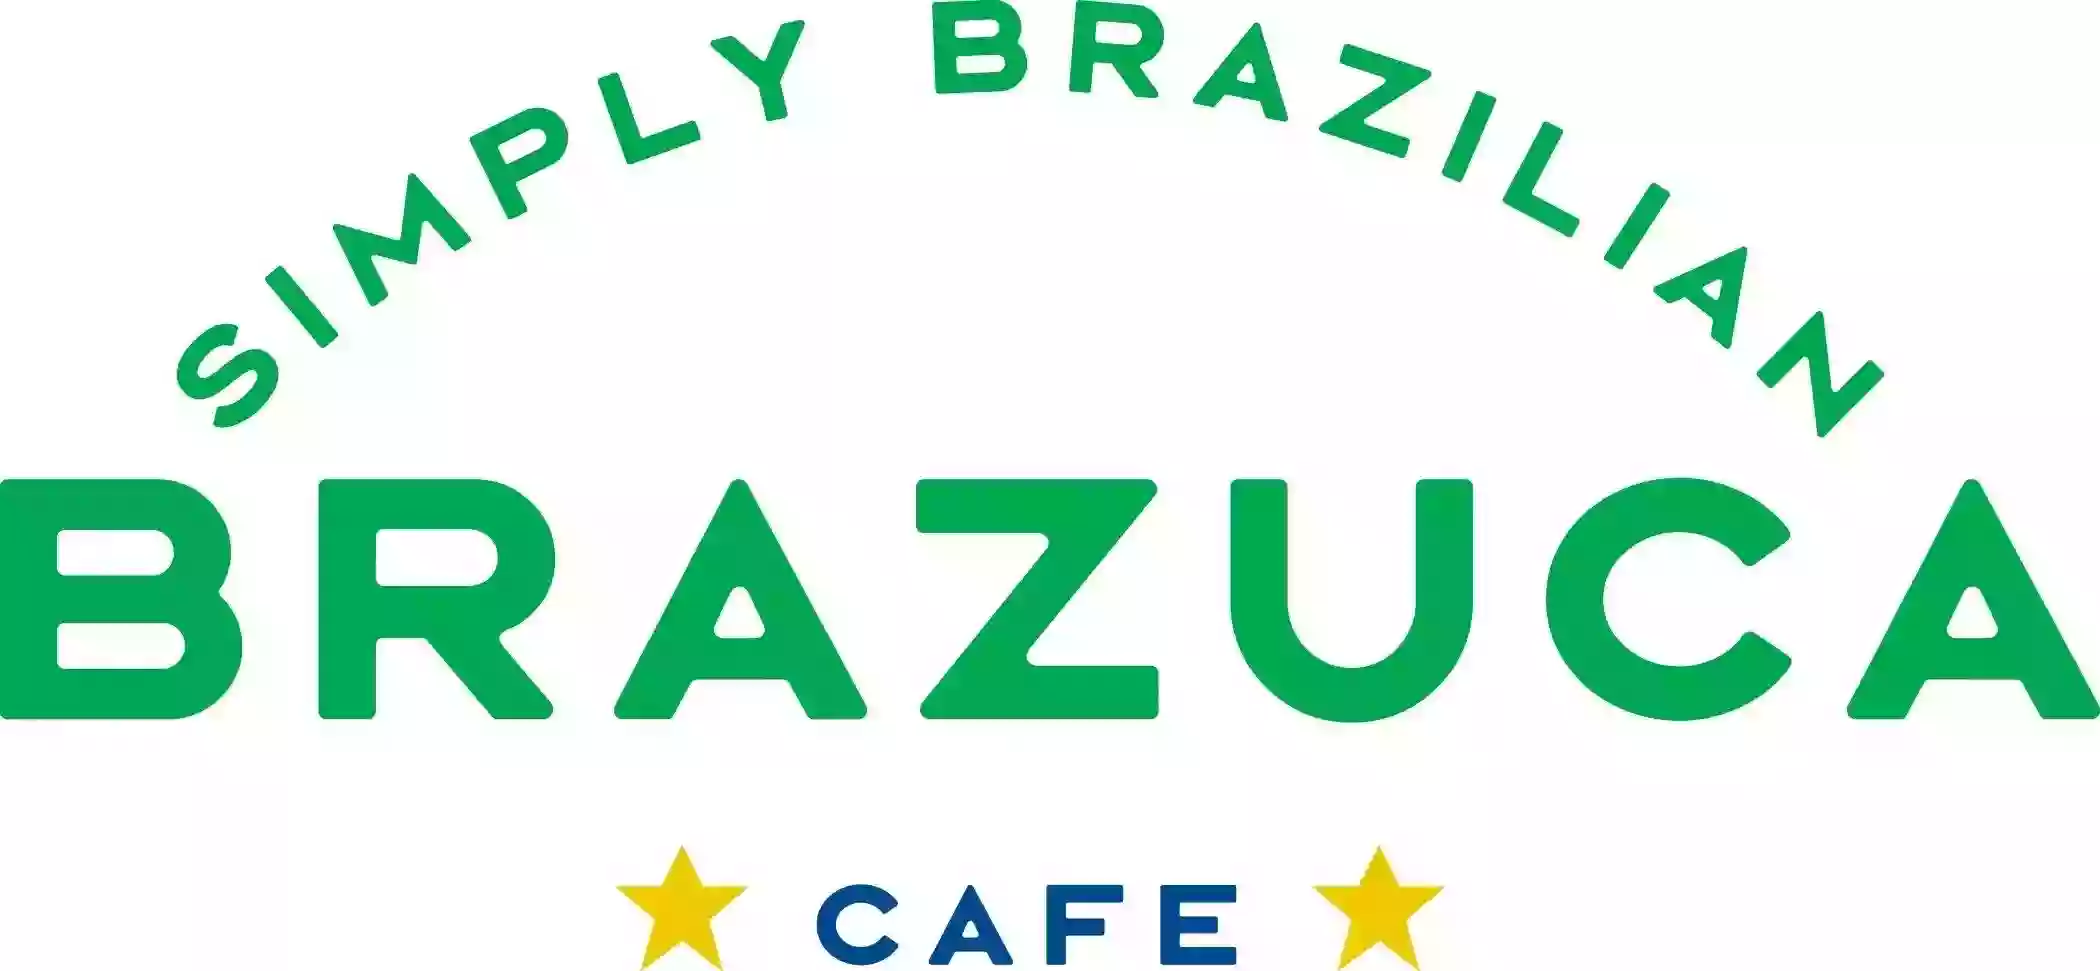 Brazuca Café